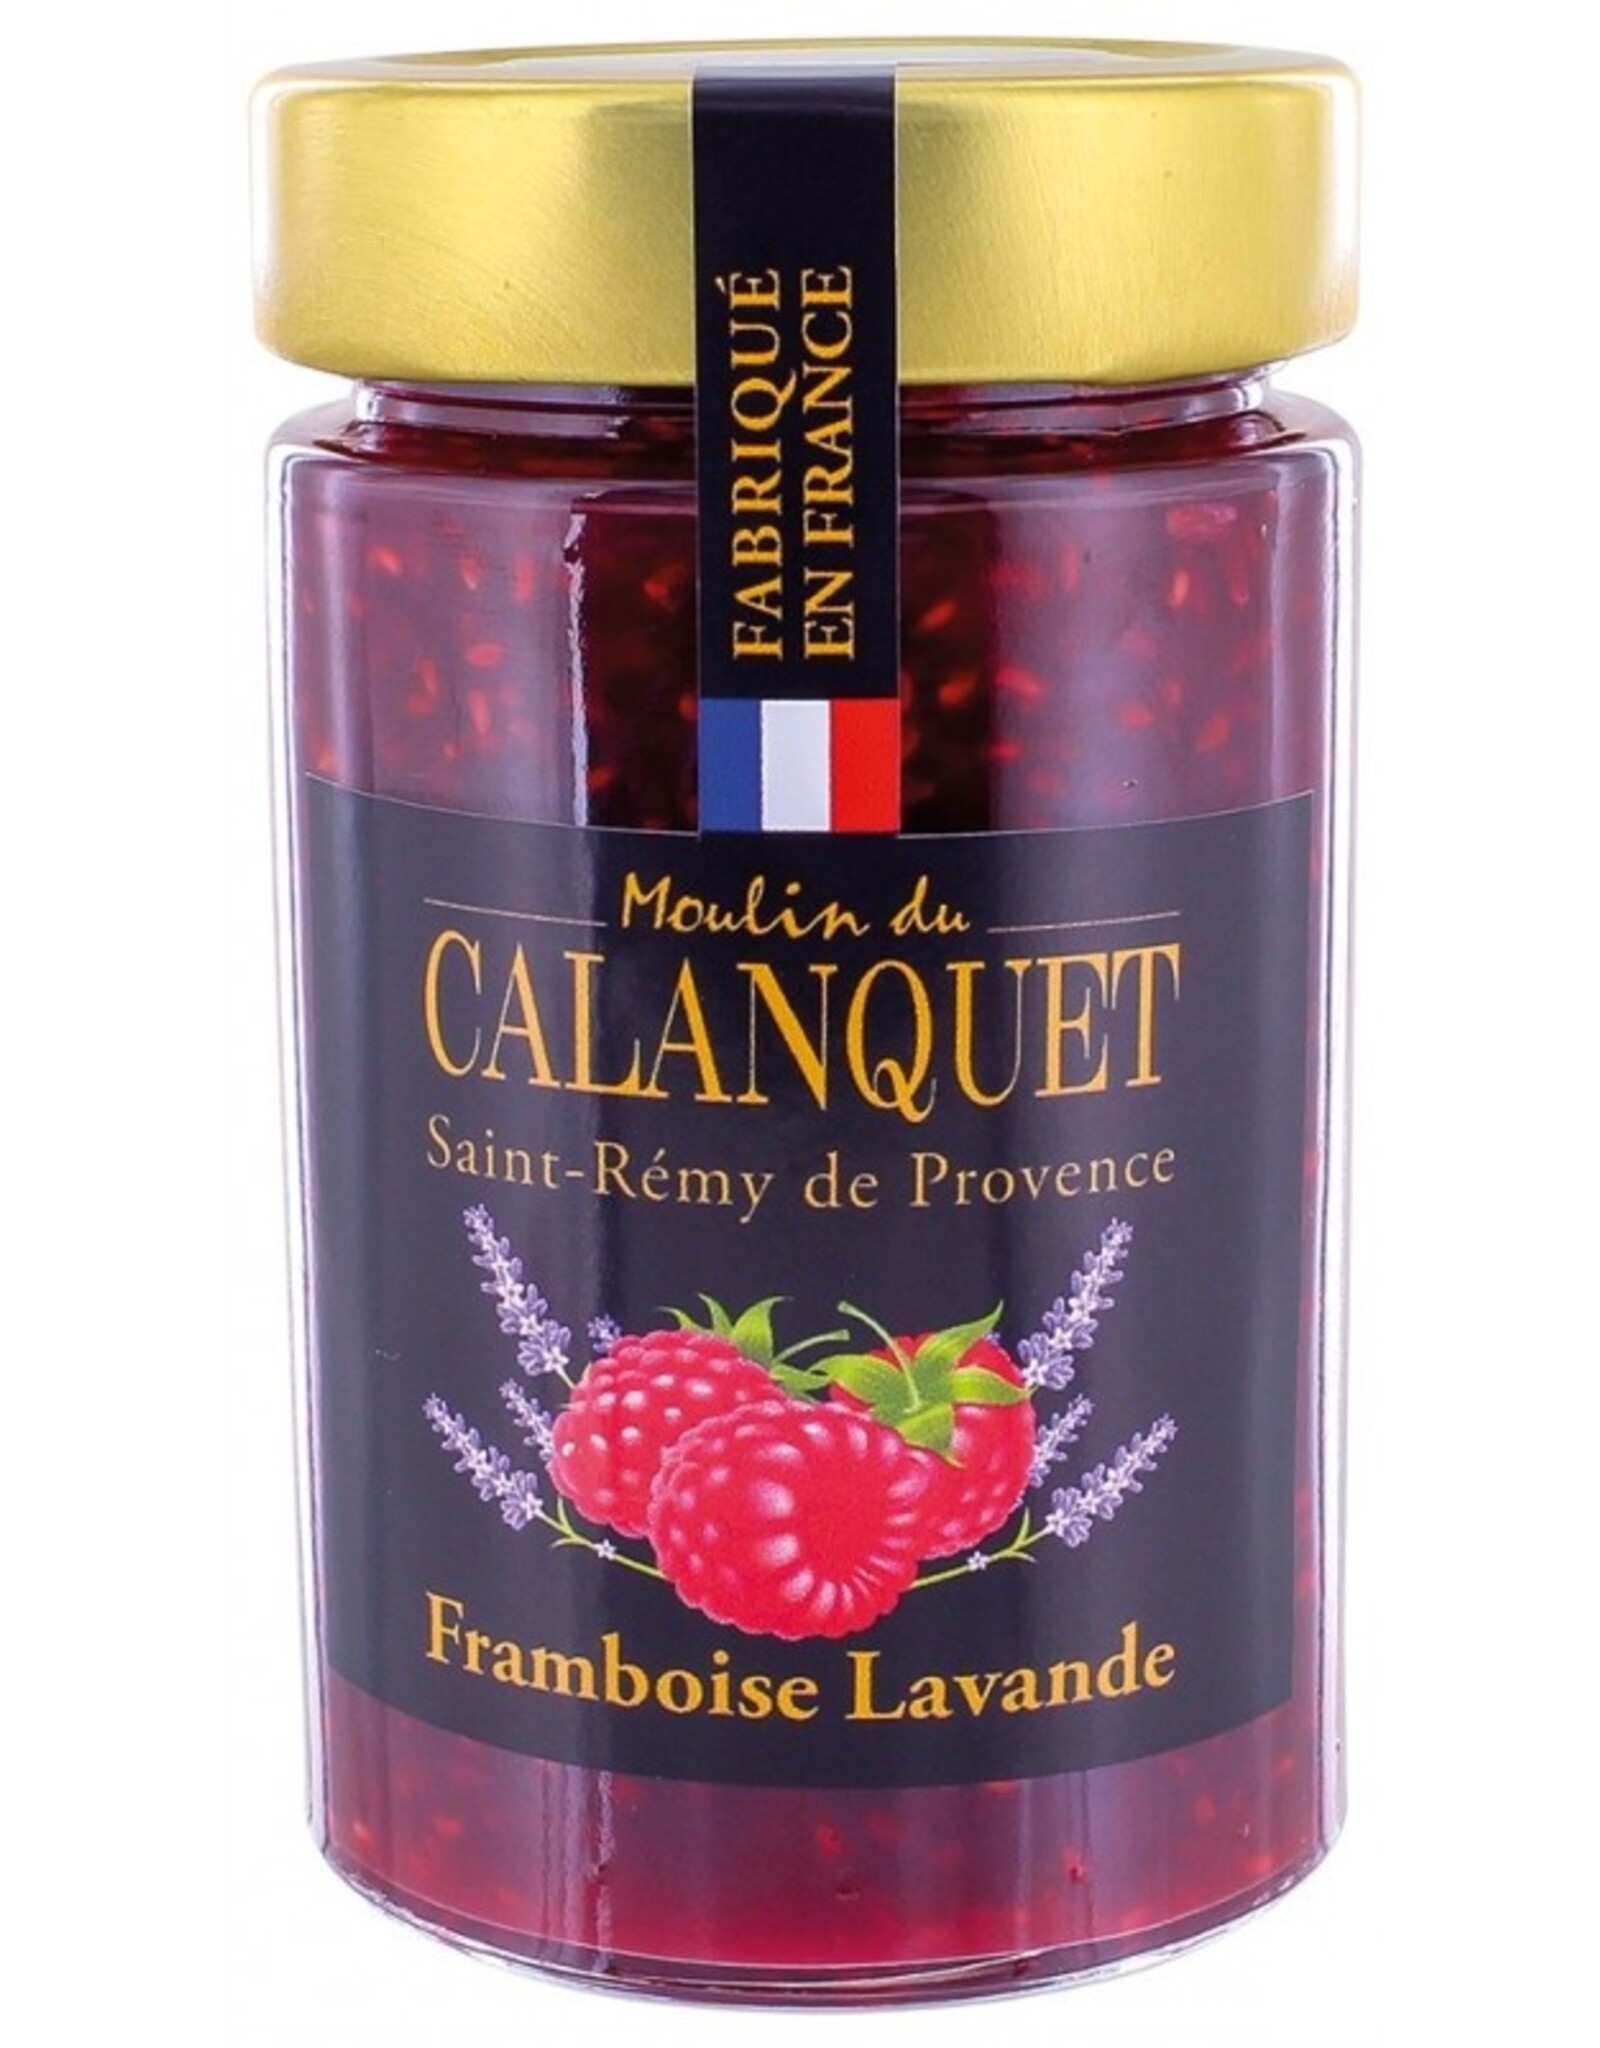 Moulin du Calanquet Confiture Framboise Lavande / Lavander & Raspberry 220 g